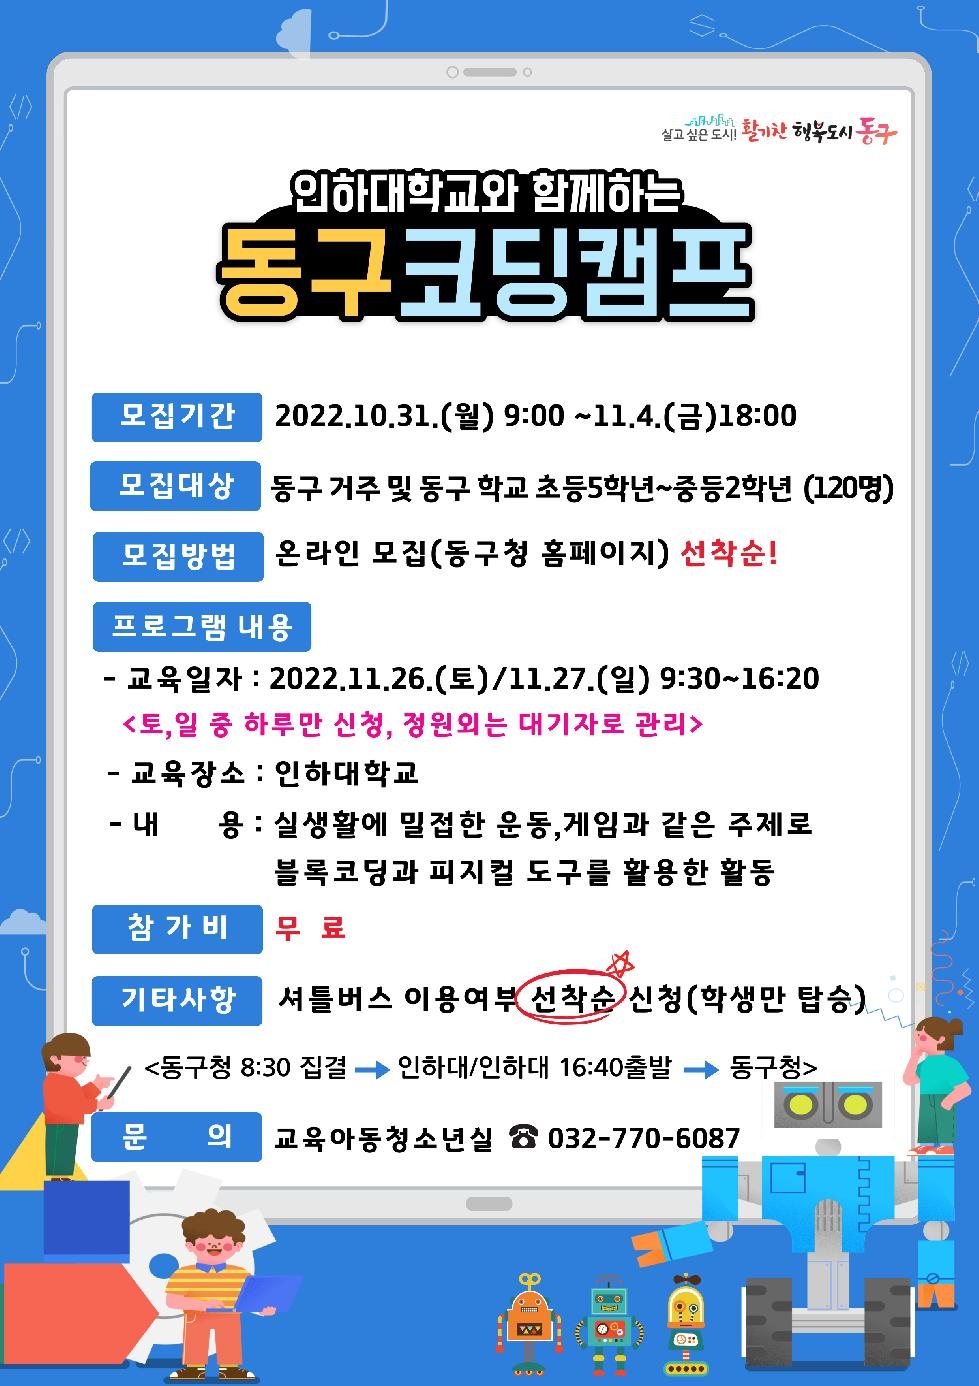 인천 동구, 인하대와 함께하는 코딩캠프 참가자 모집